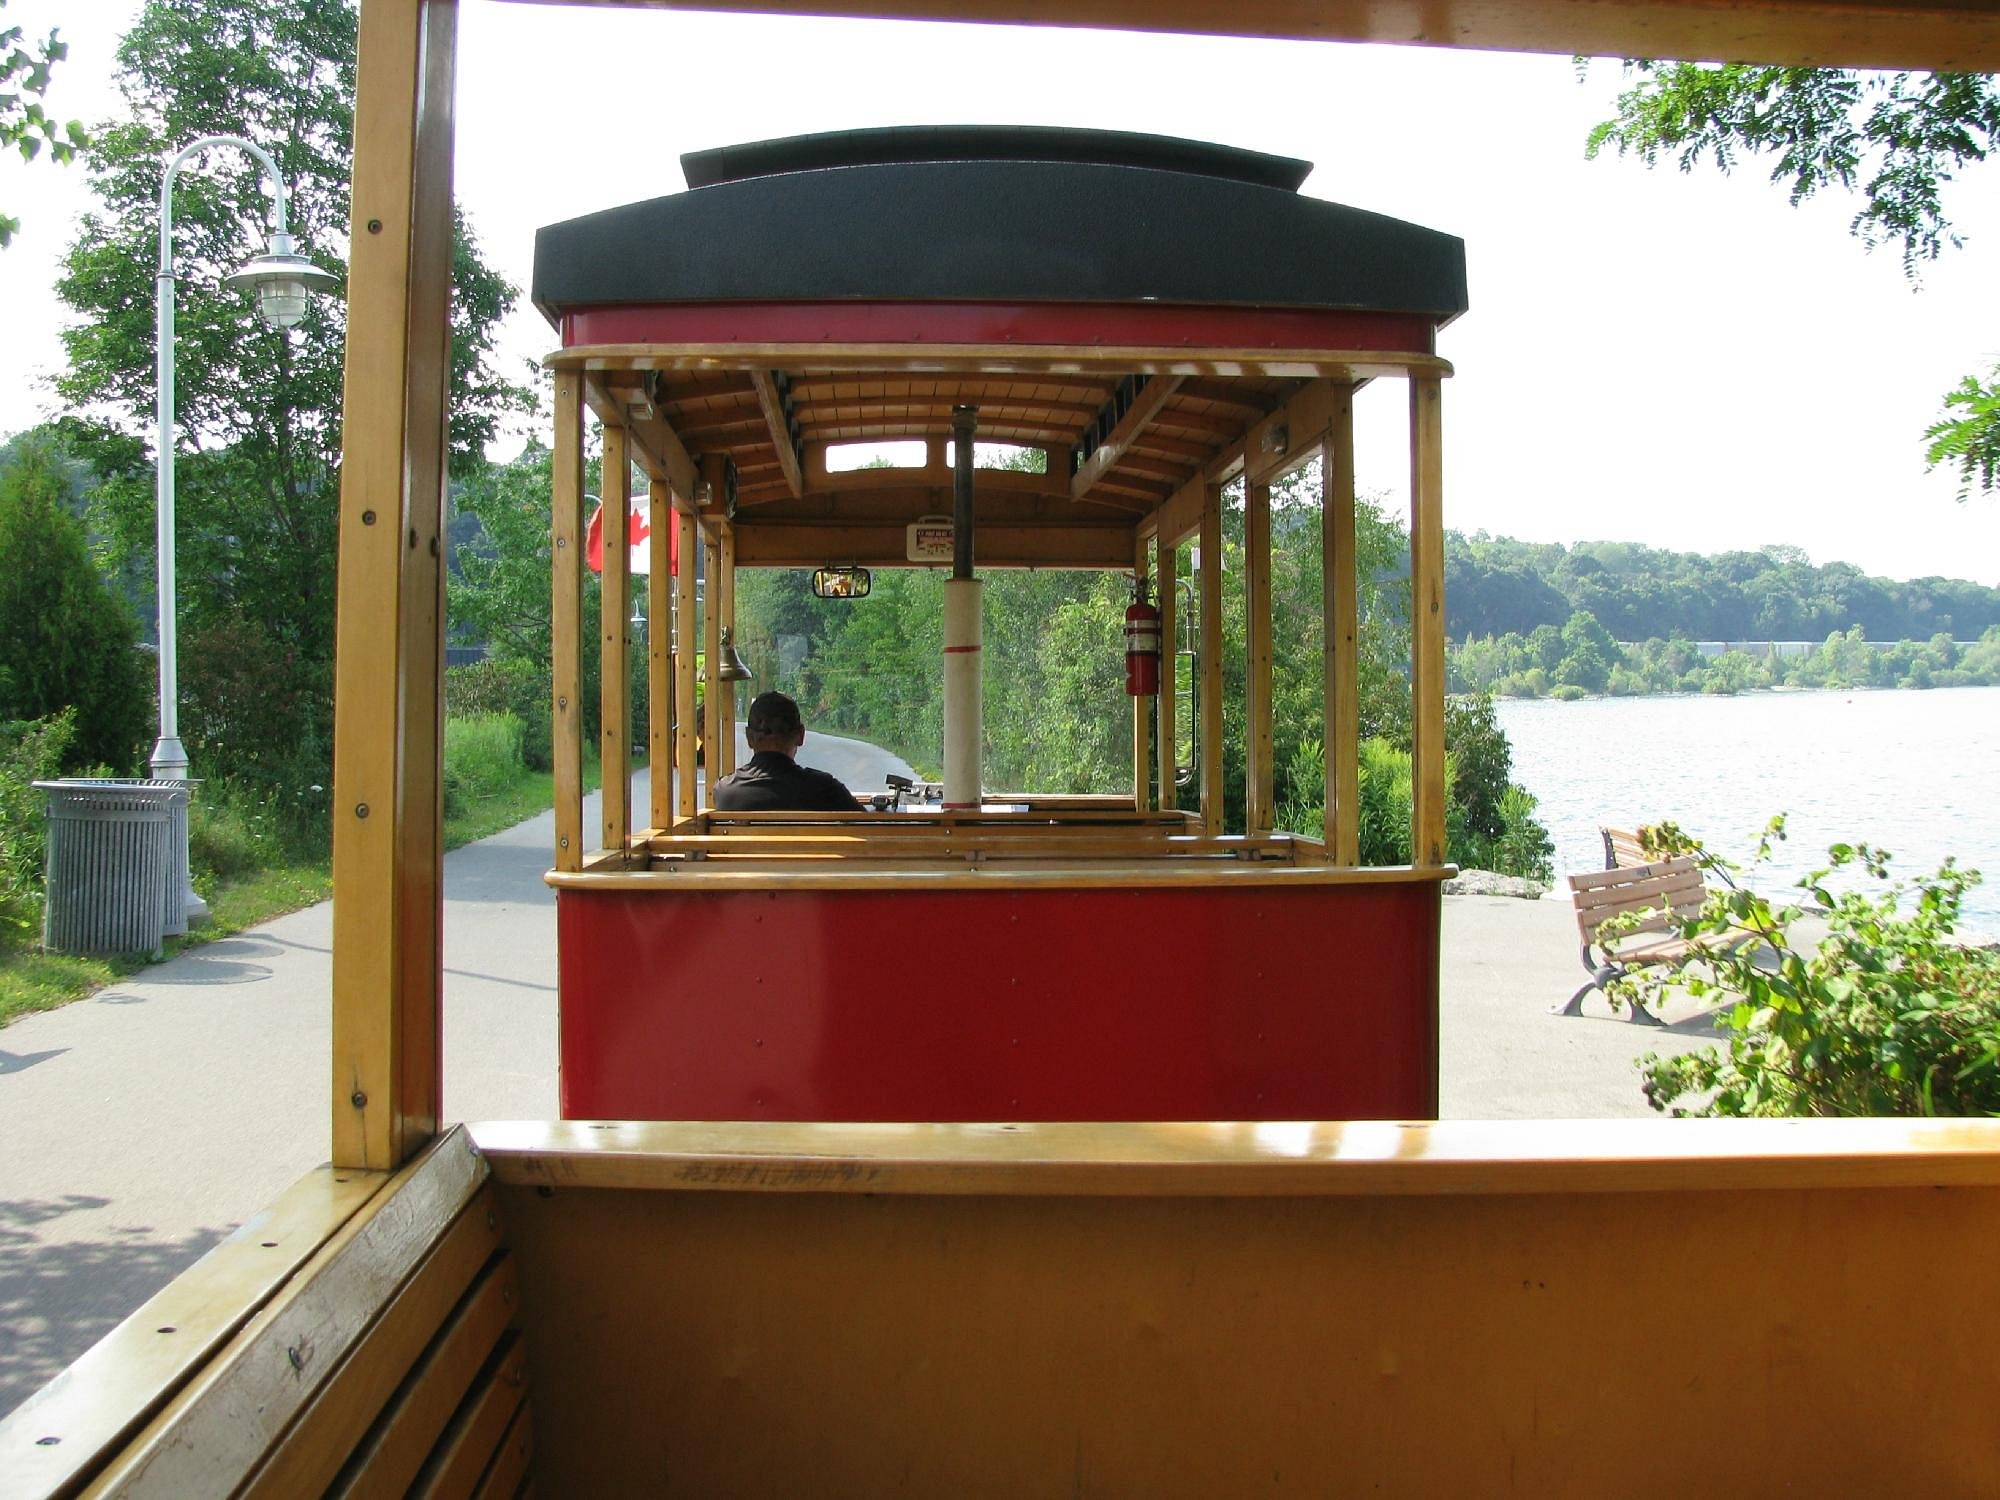 hamilton trolley tour